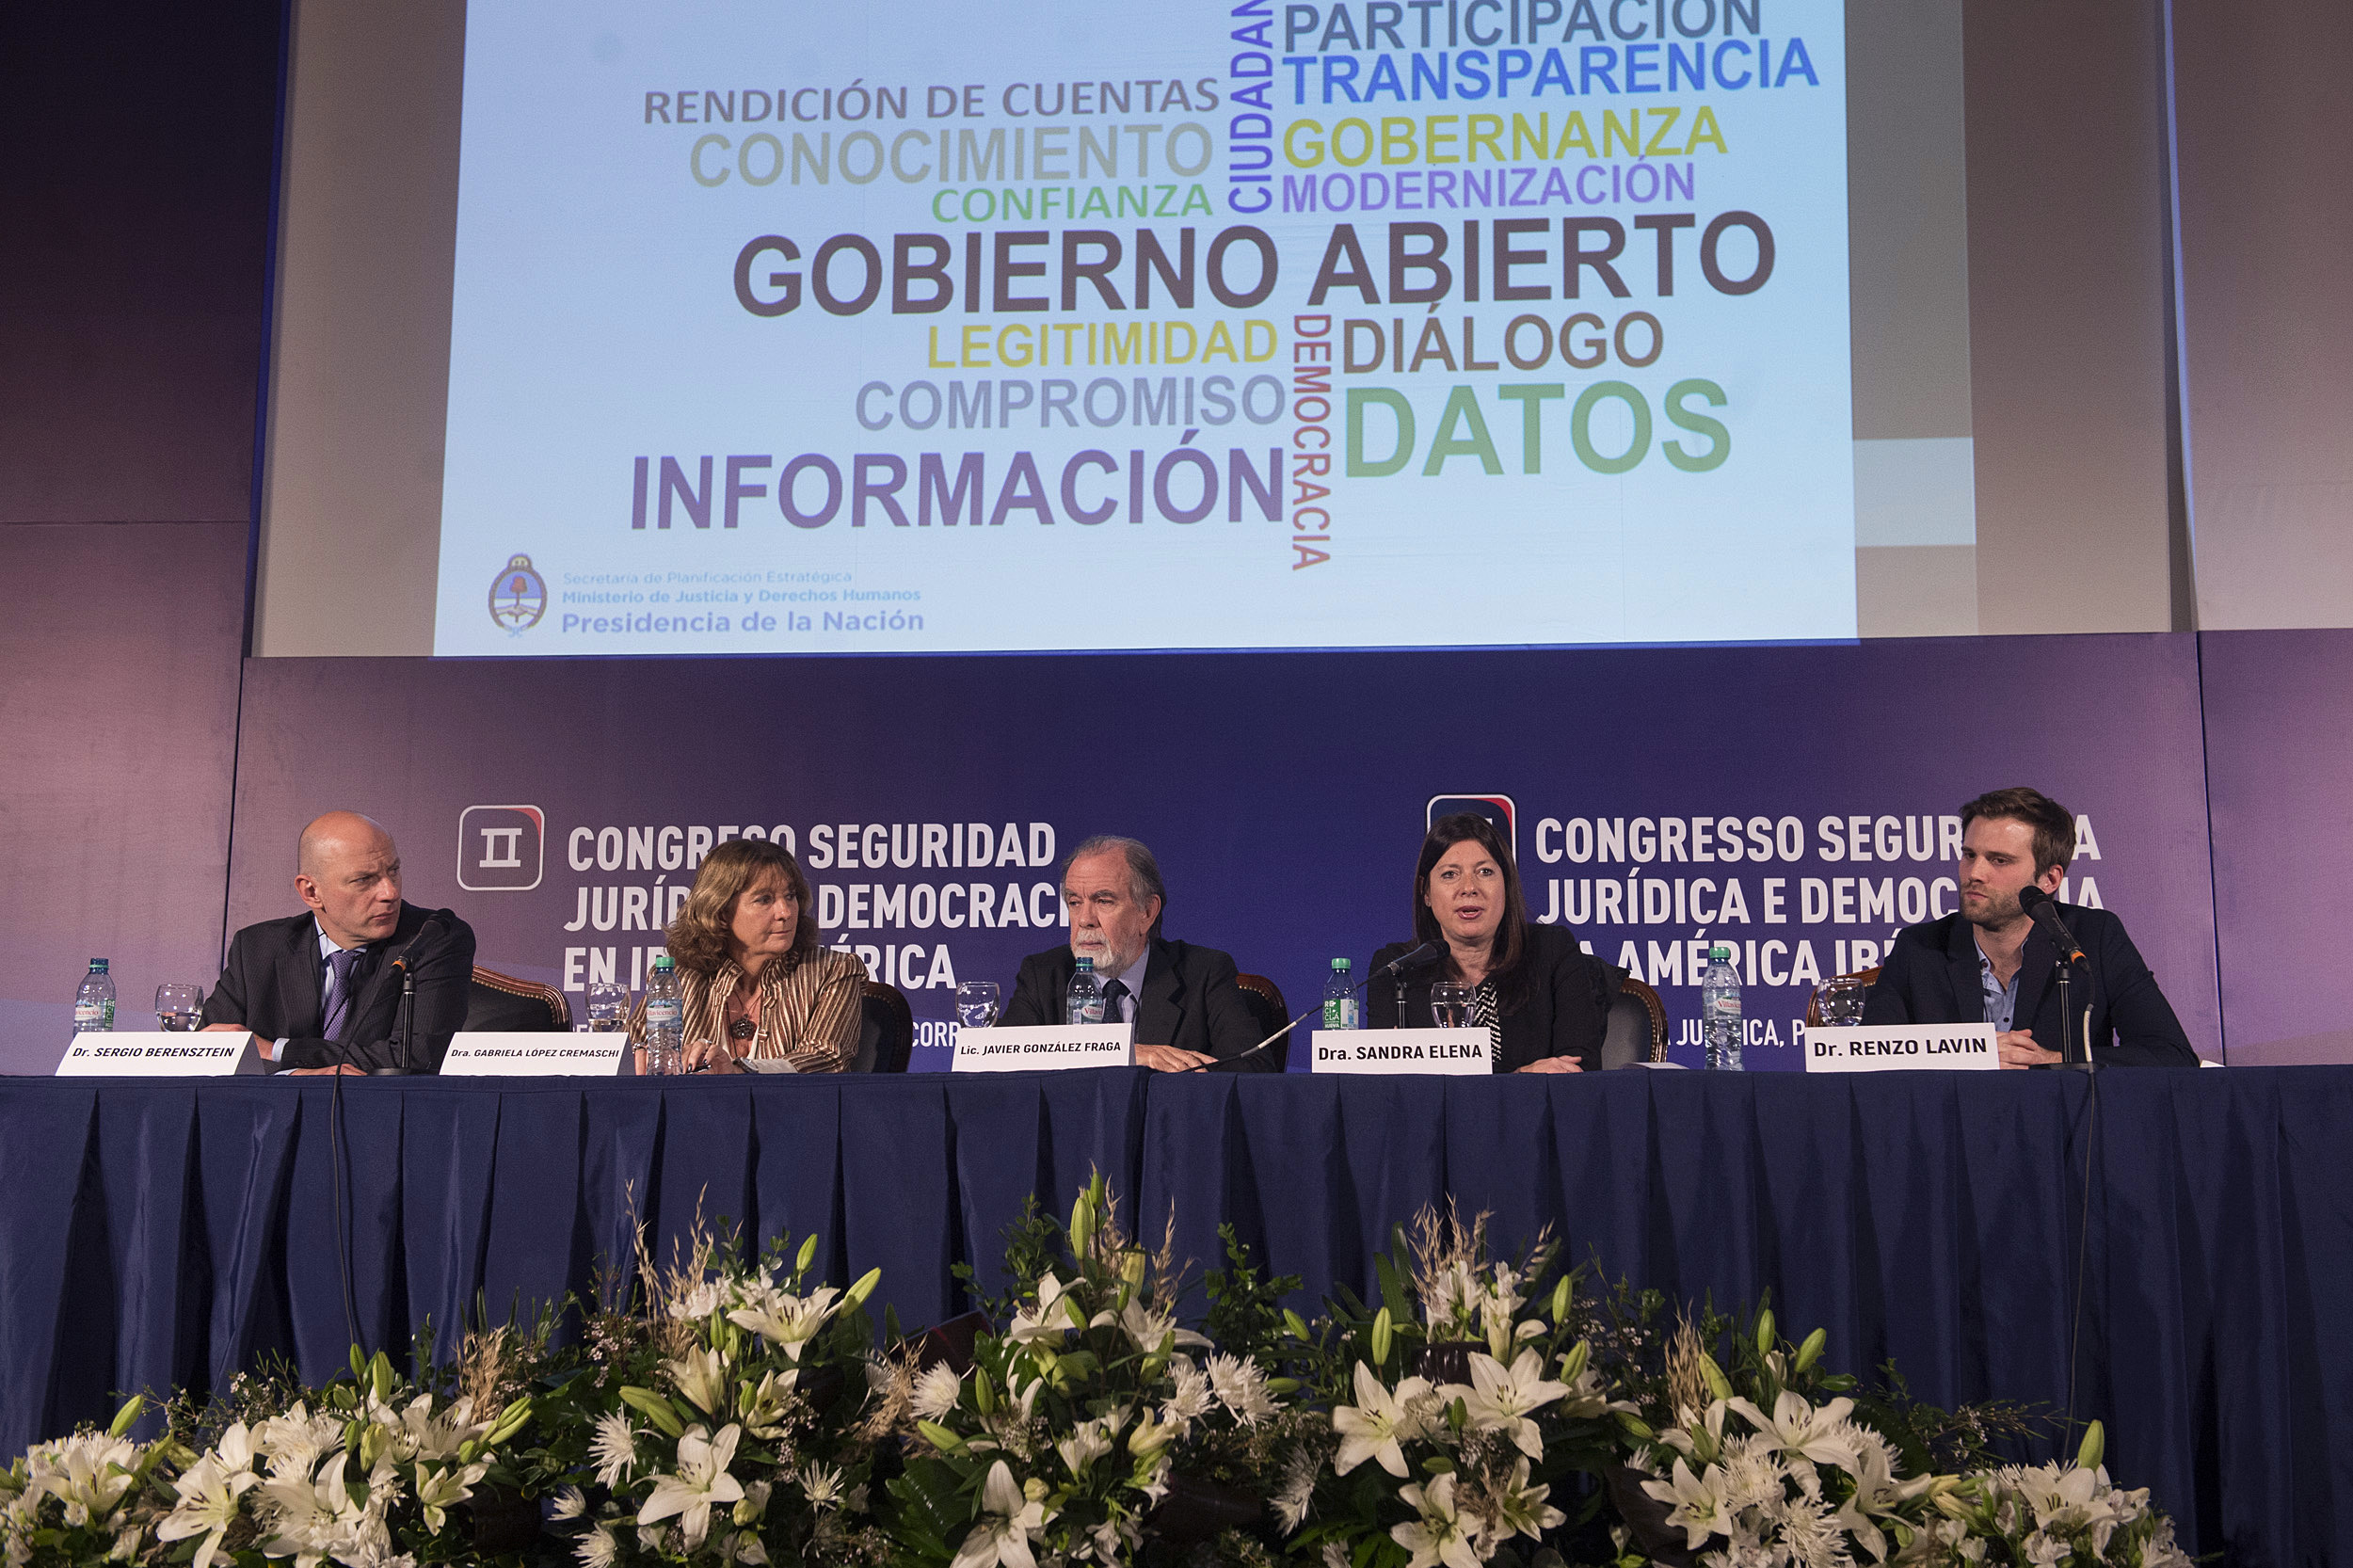 El panel “Acceso a la información pública y transparencia corporativa”